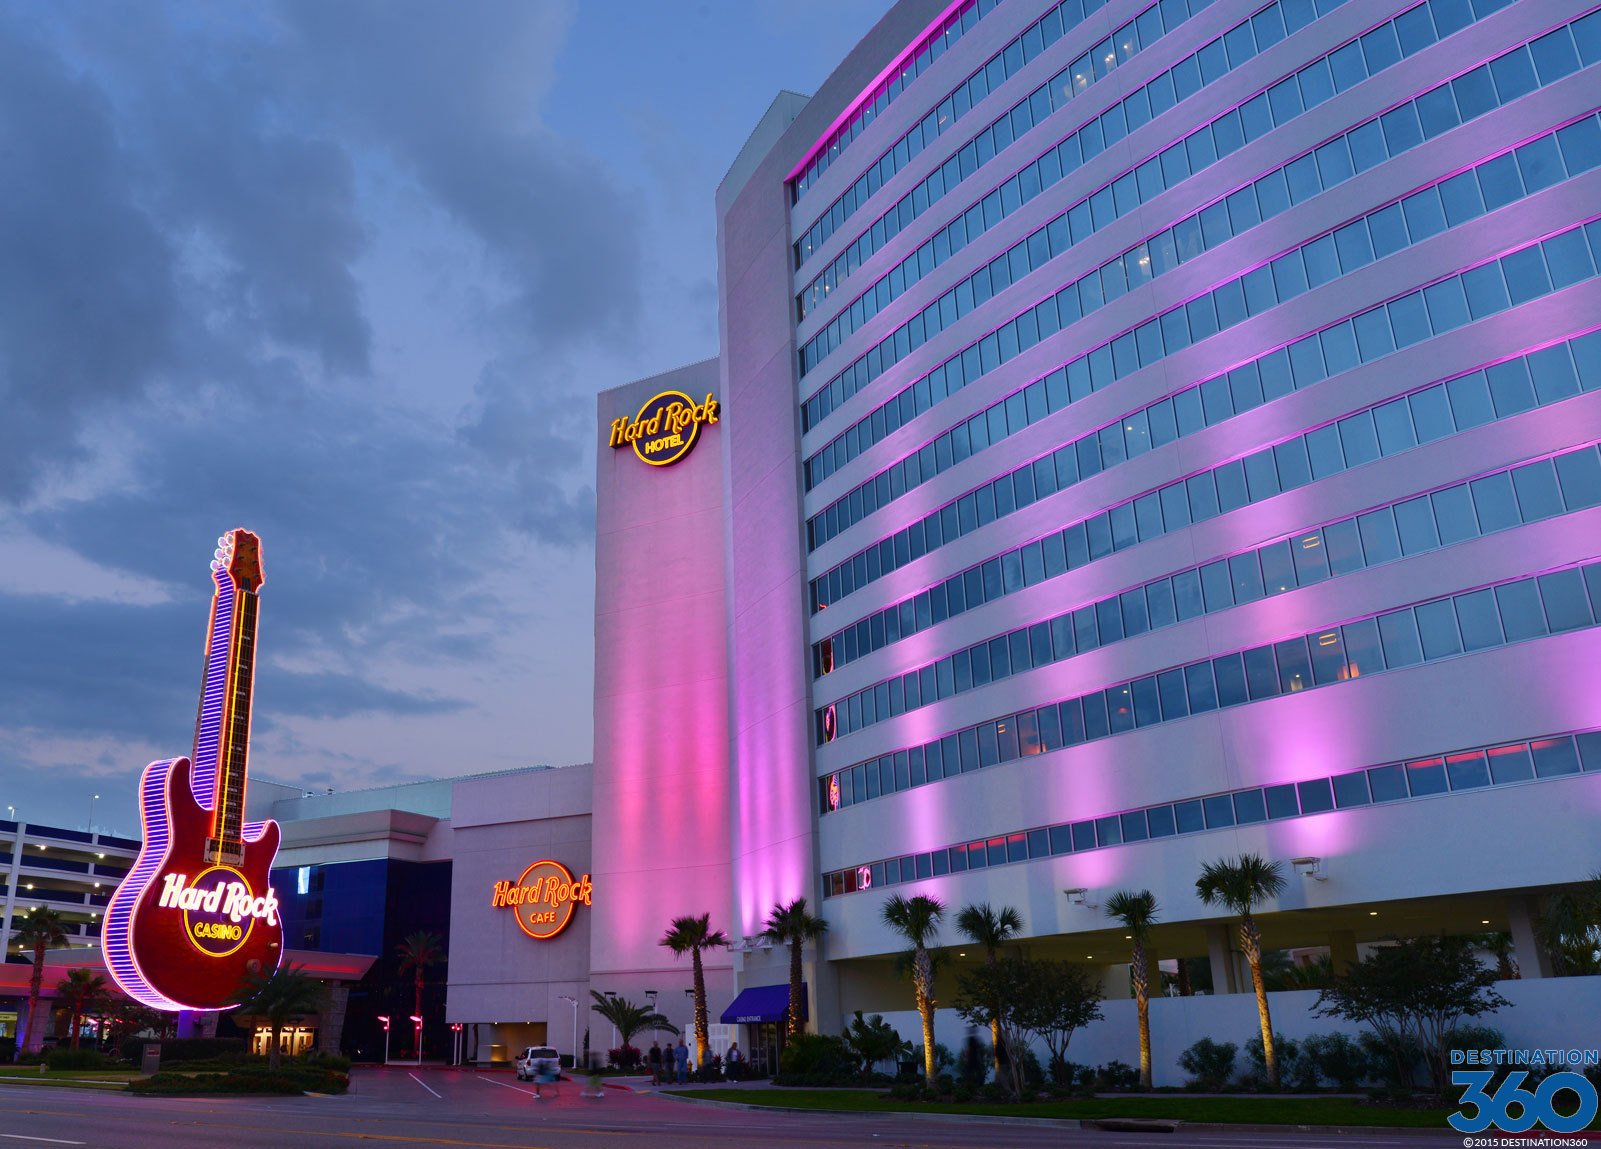 Gulf Coast casinos